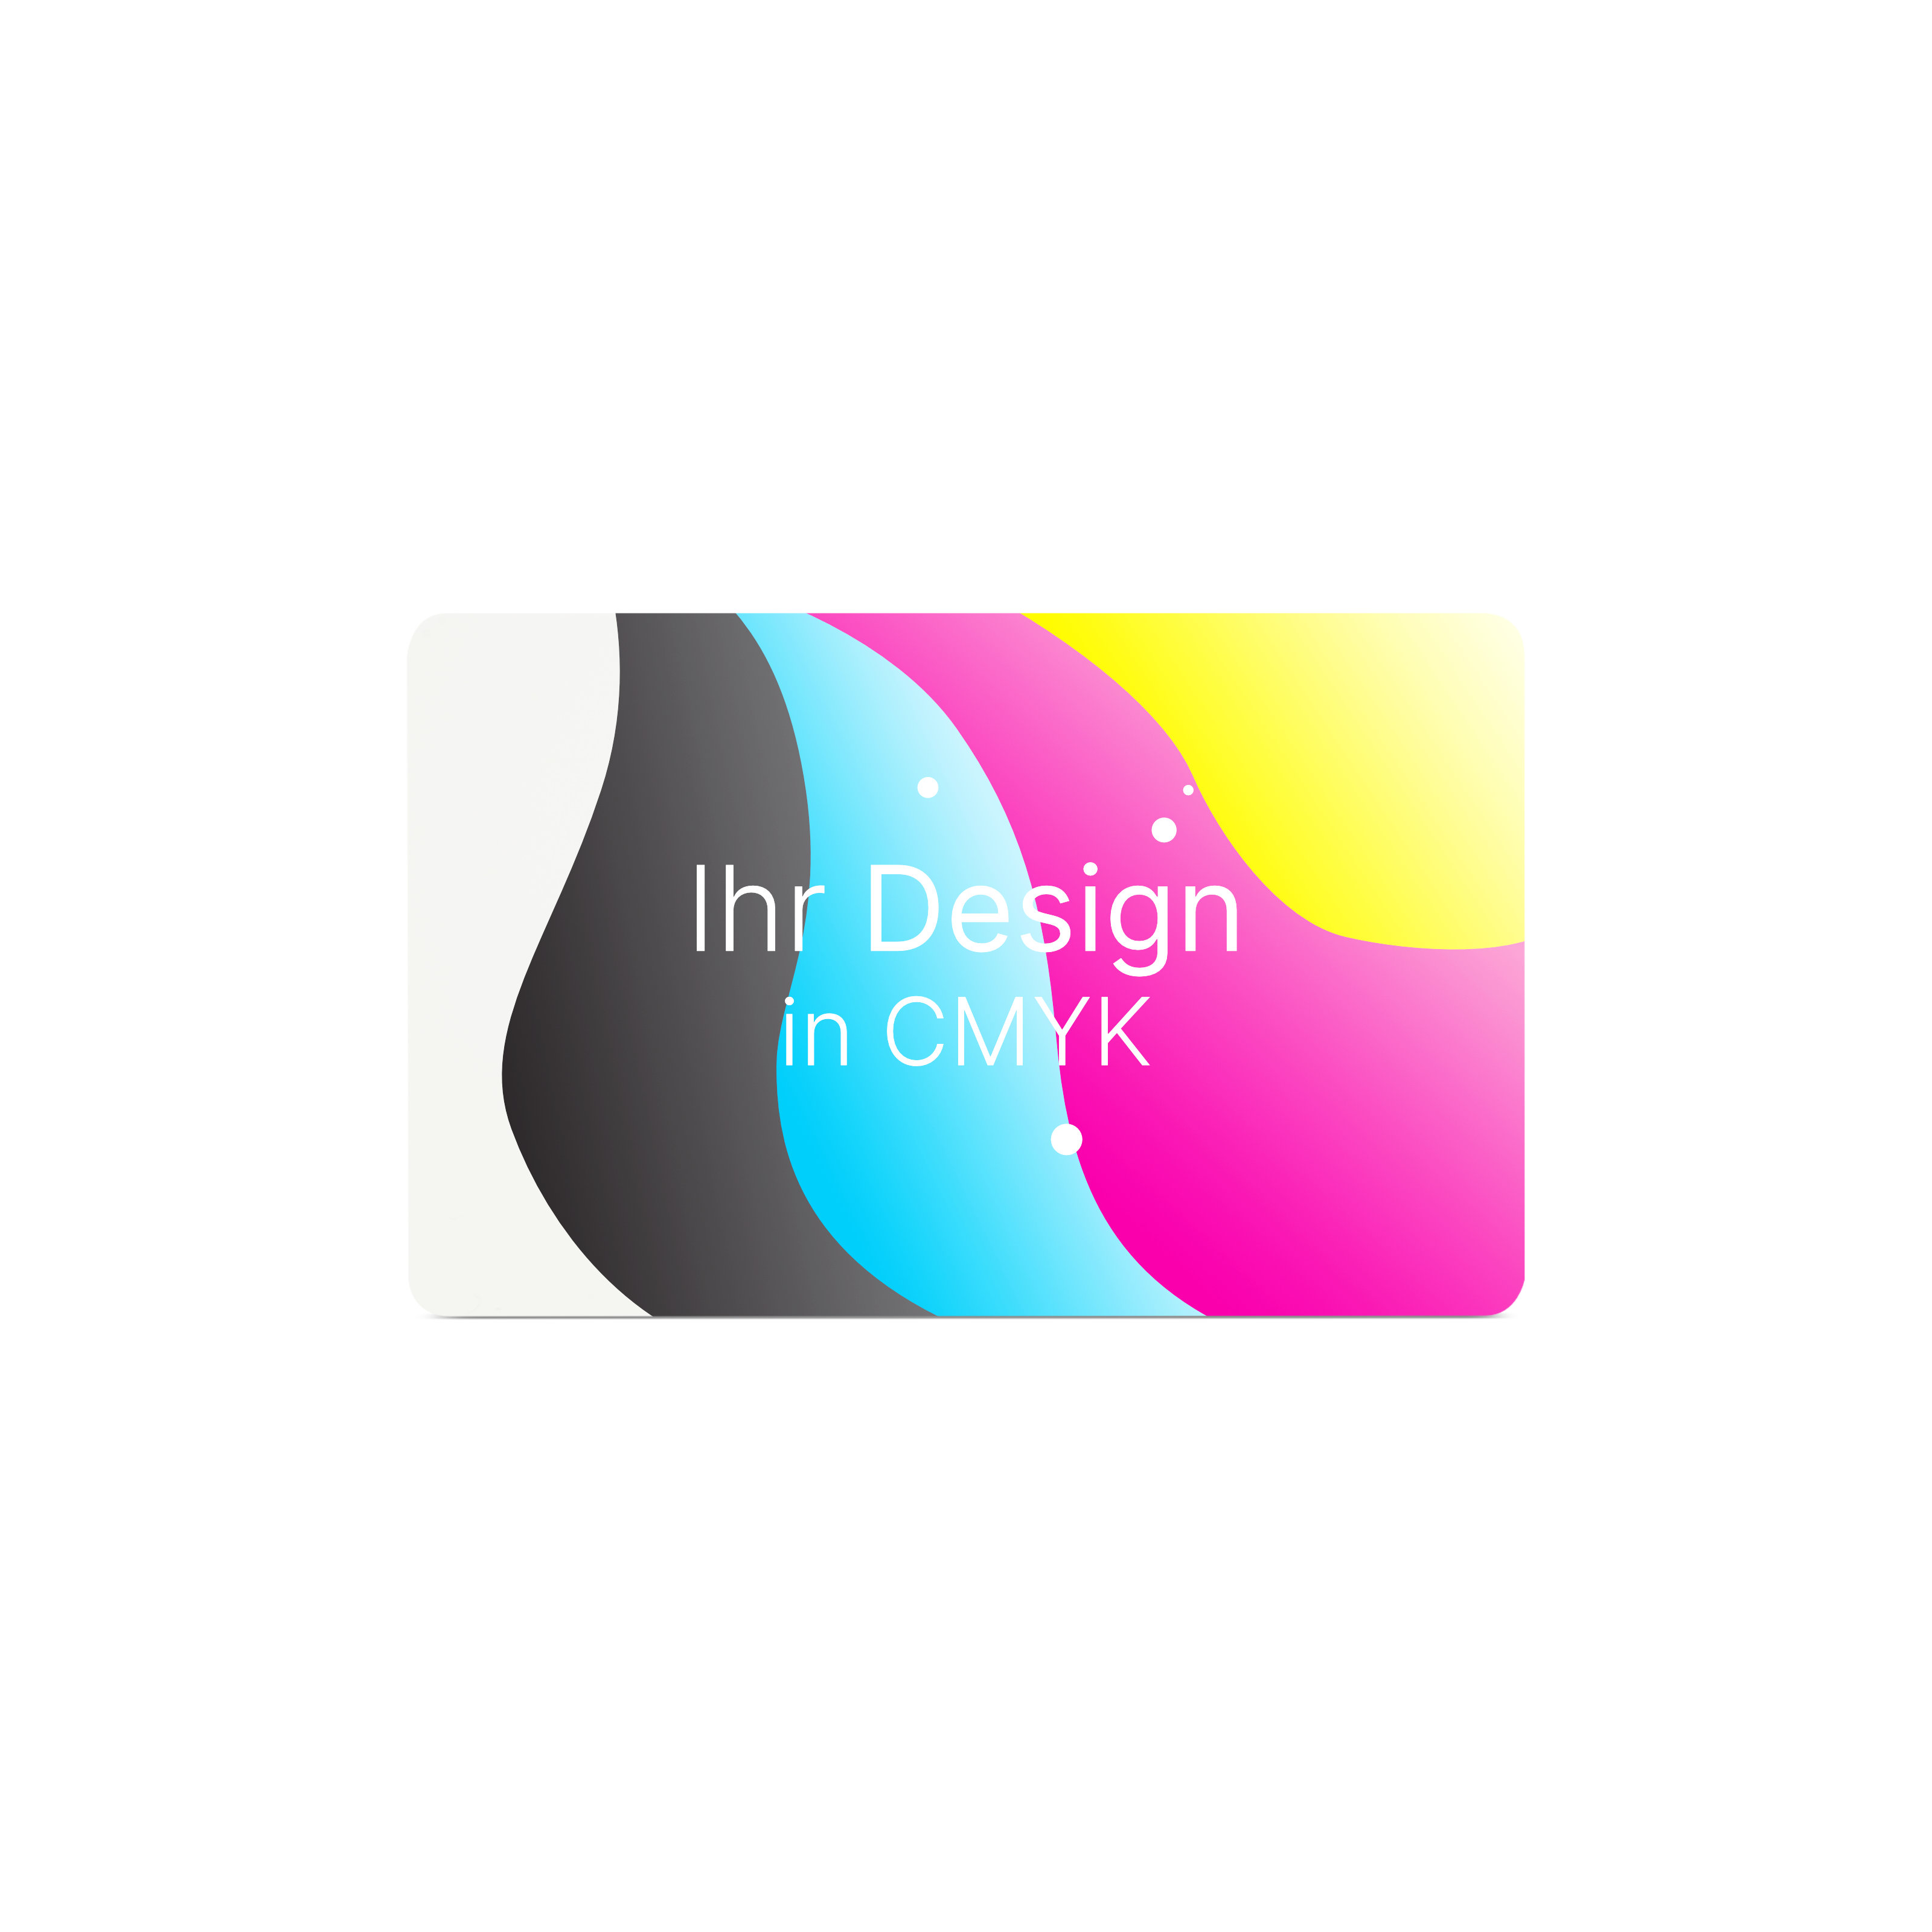 Bunt gestreifte NFC Karte aus PVC mit Bedruckung "Ihr Logo in CMYK"